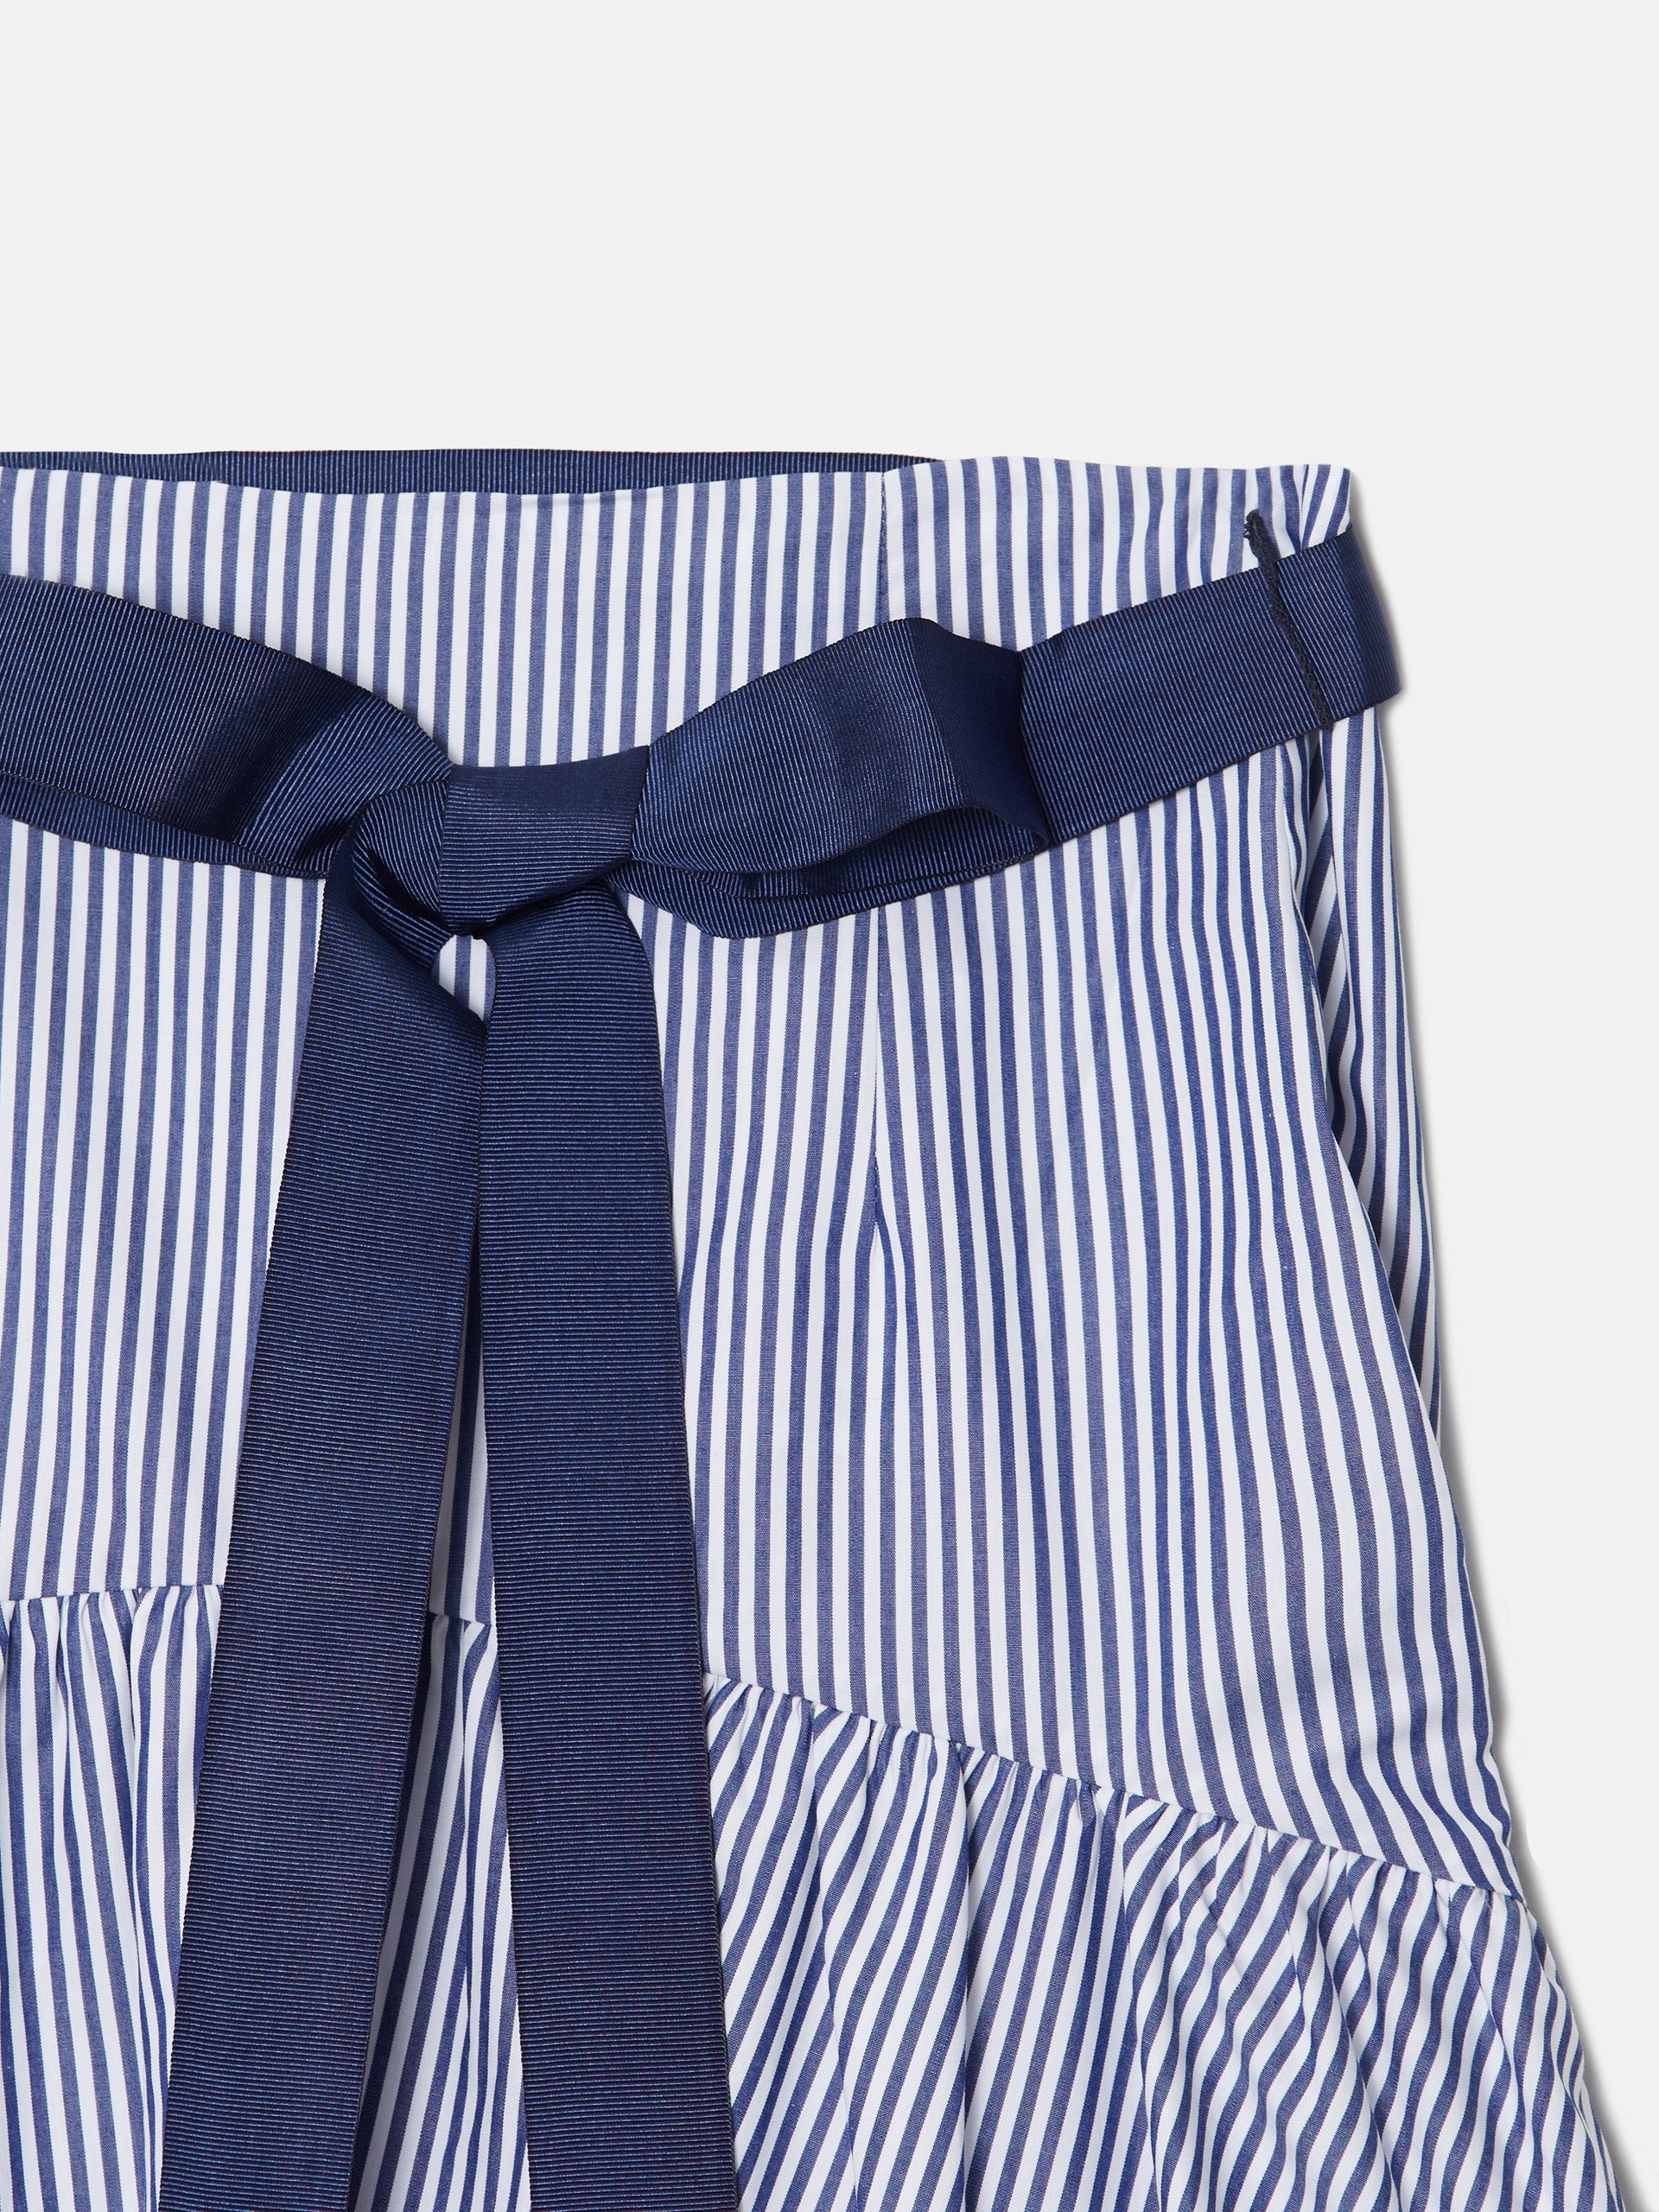 Navy blue striped long skirt